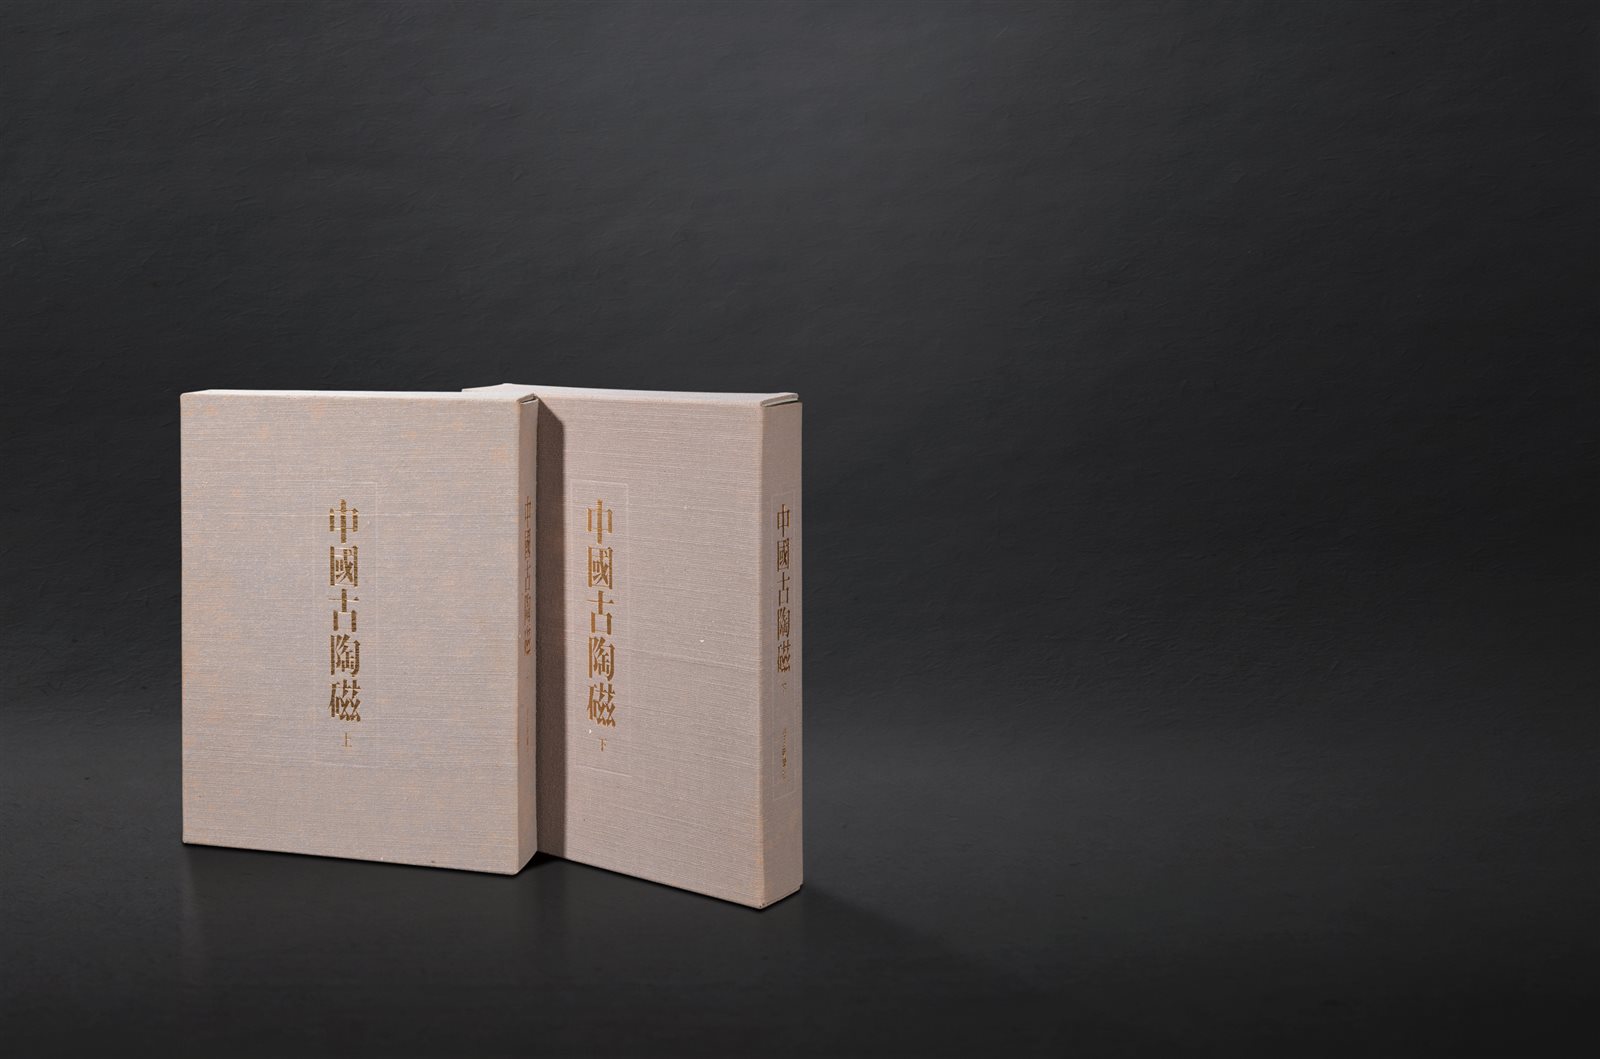 原函精装限量《中国古陶瓷》一套两册全